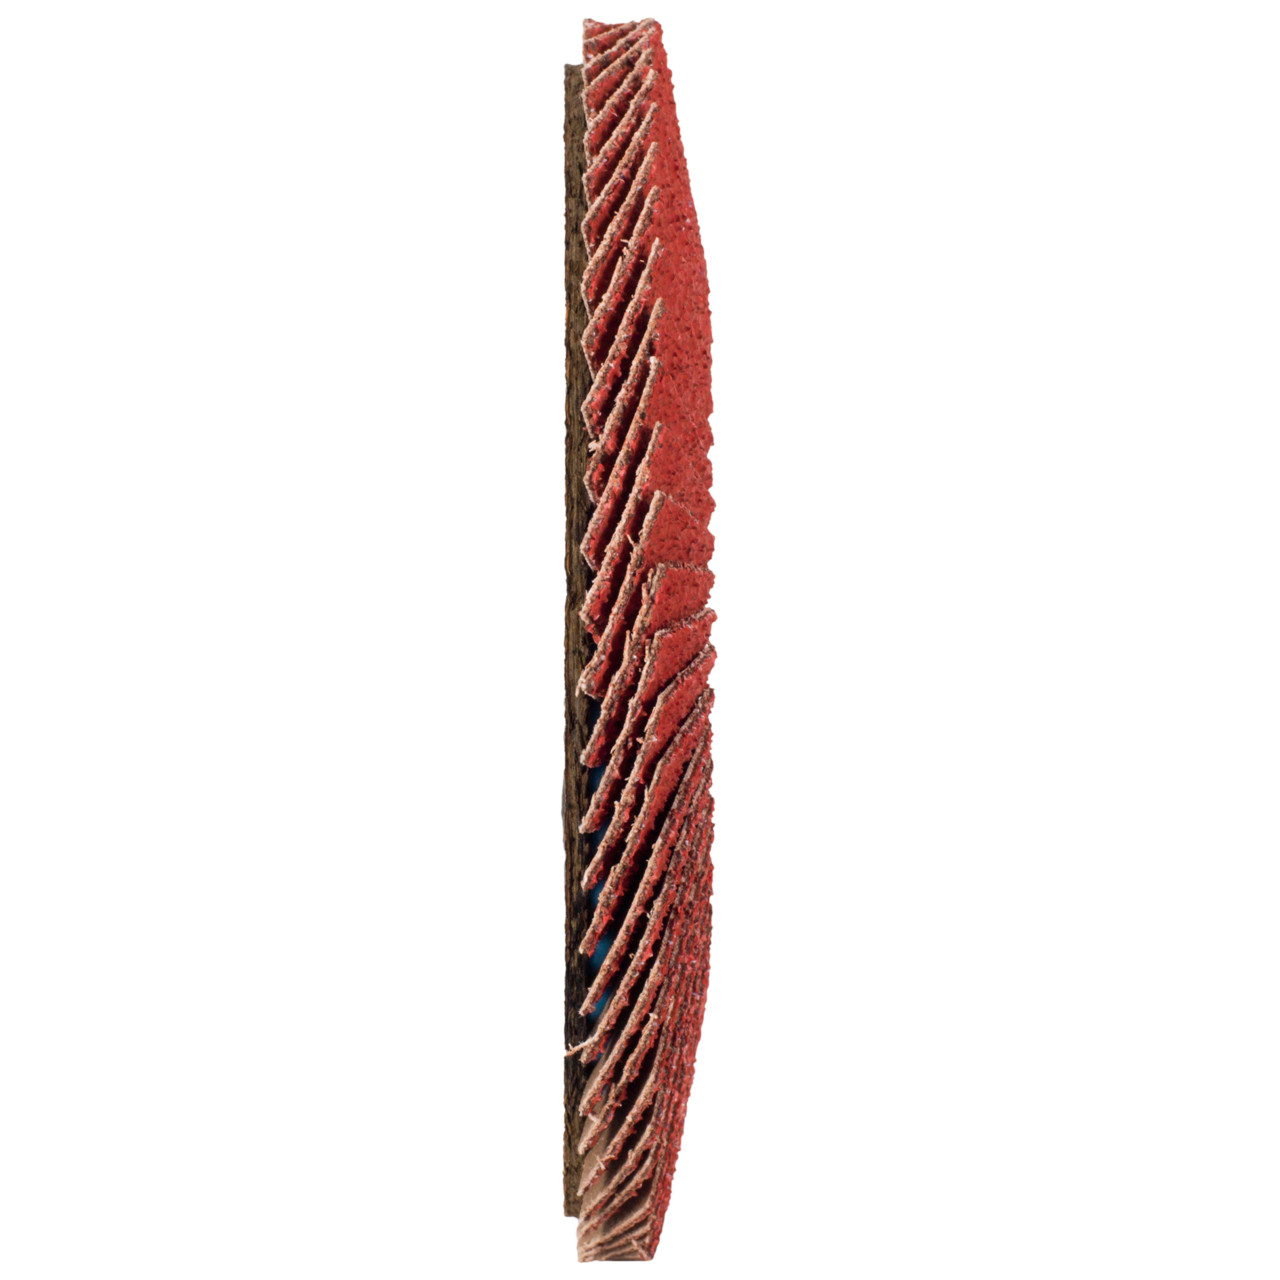 TYROLIT getande borgring DxH 178x22,23 CERABOND getande borgring voor roestvrij staal, P40, vorm: 27A - slingeruitvoering (glasvezeldragerhuisuitvoering), Art. 34166166